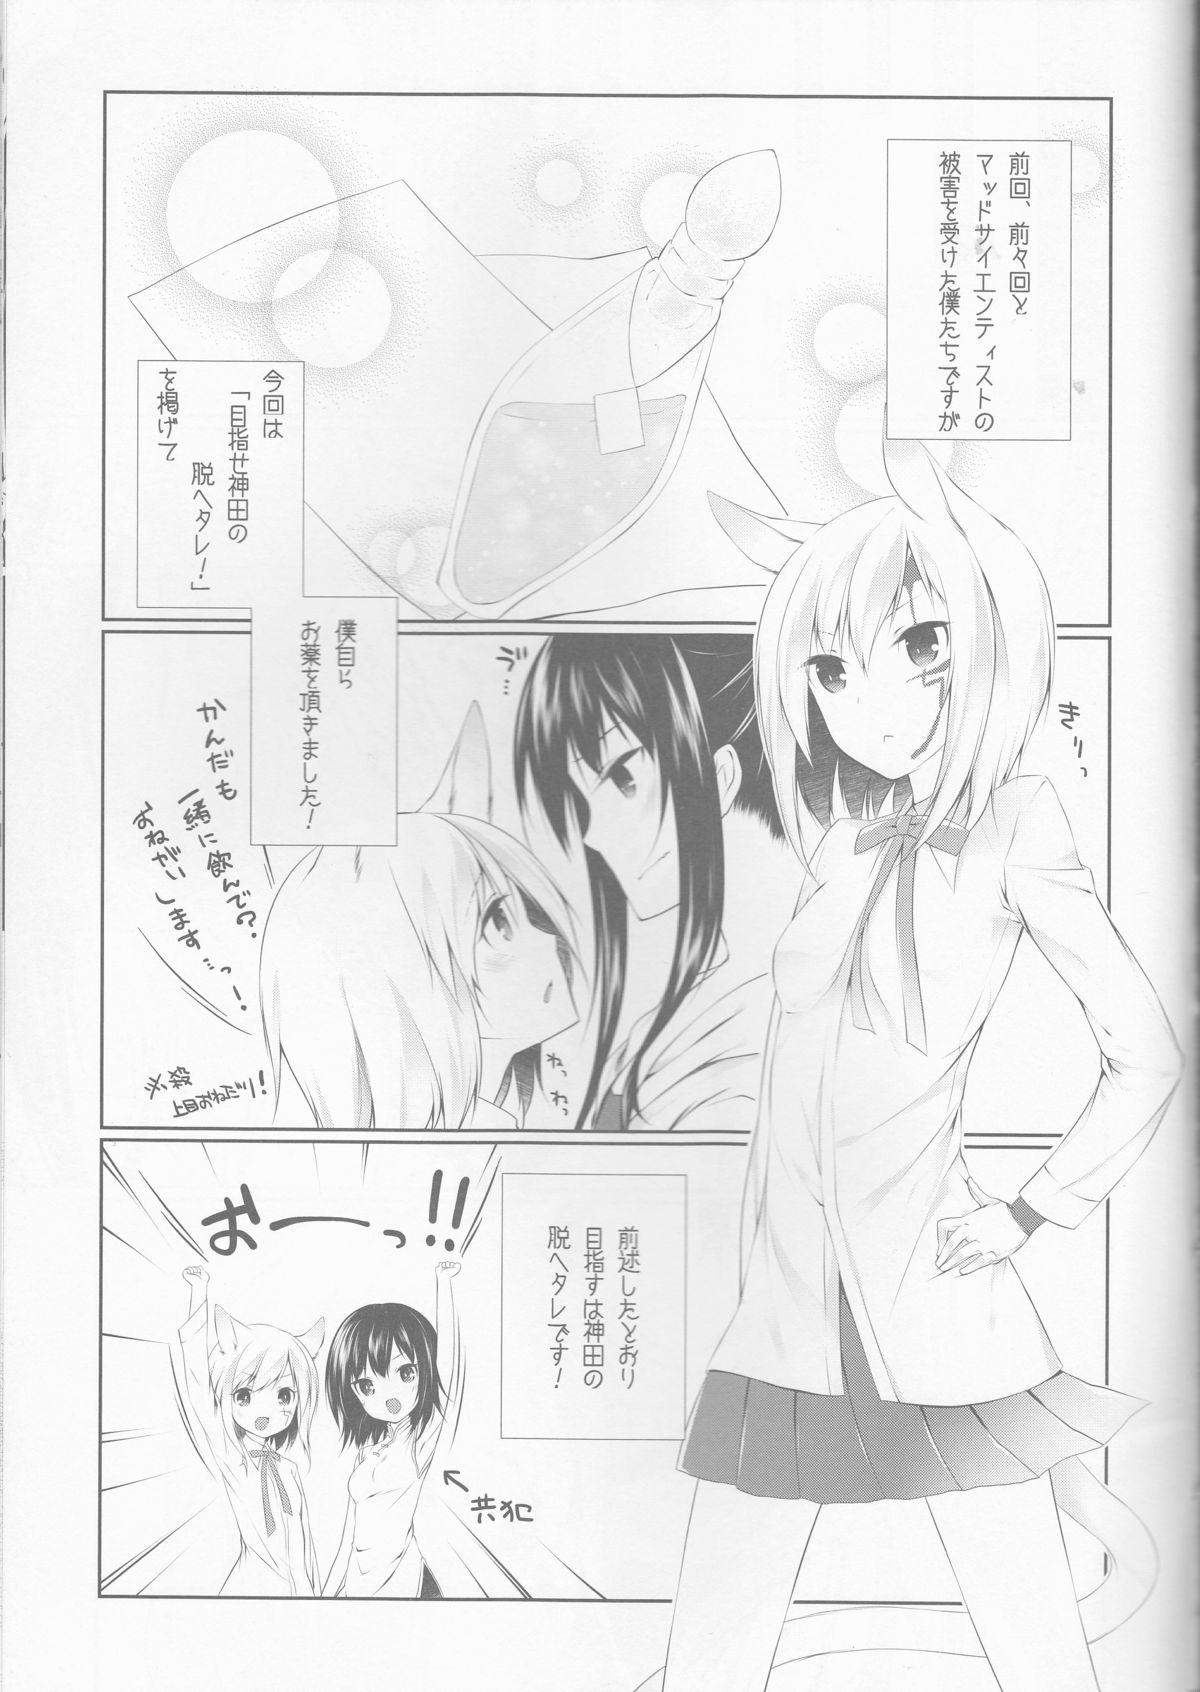 Bush Yokubari Sweet Angel Betsubara! - D.gray-man Massage - Page 5